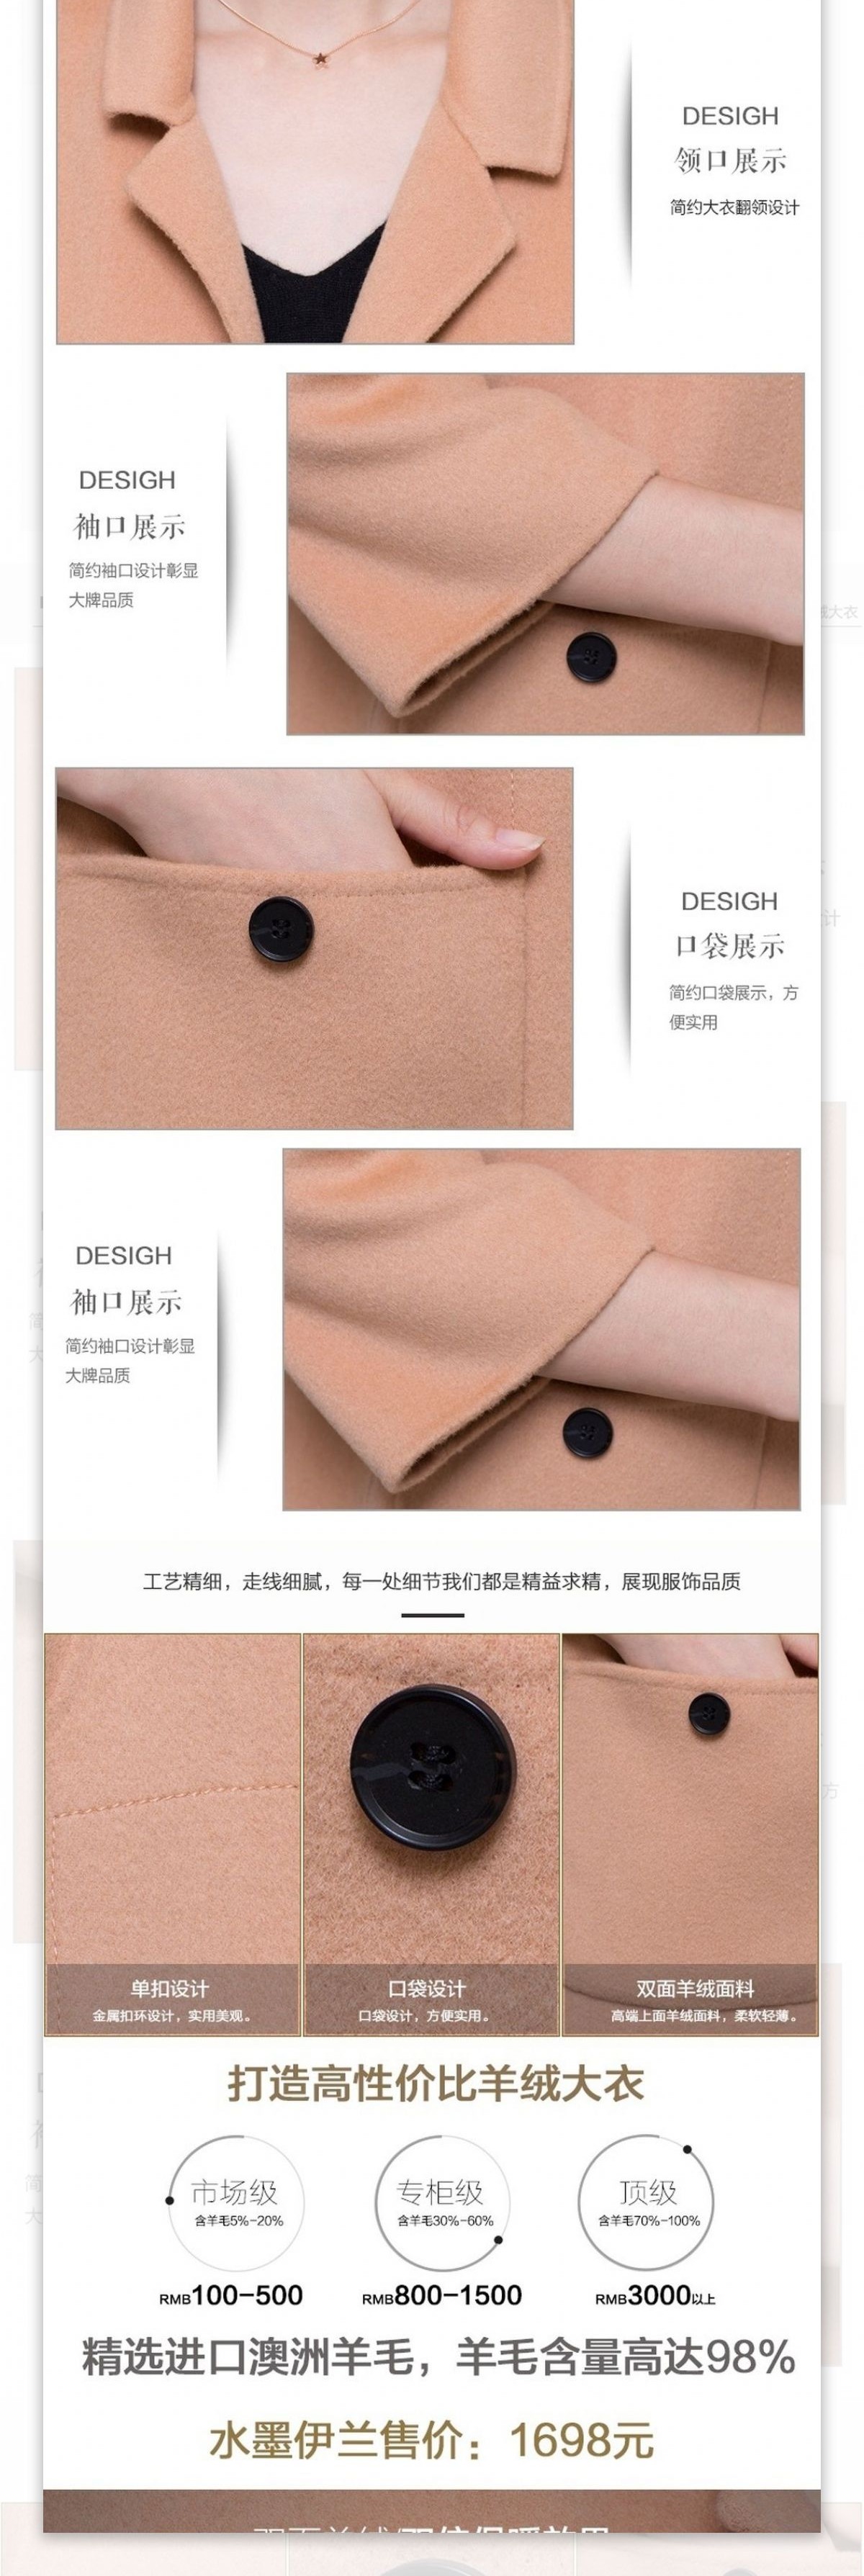 双面羊绒大衣详情设计2015